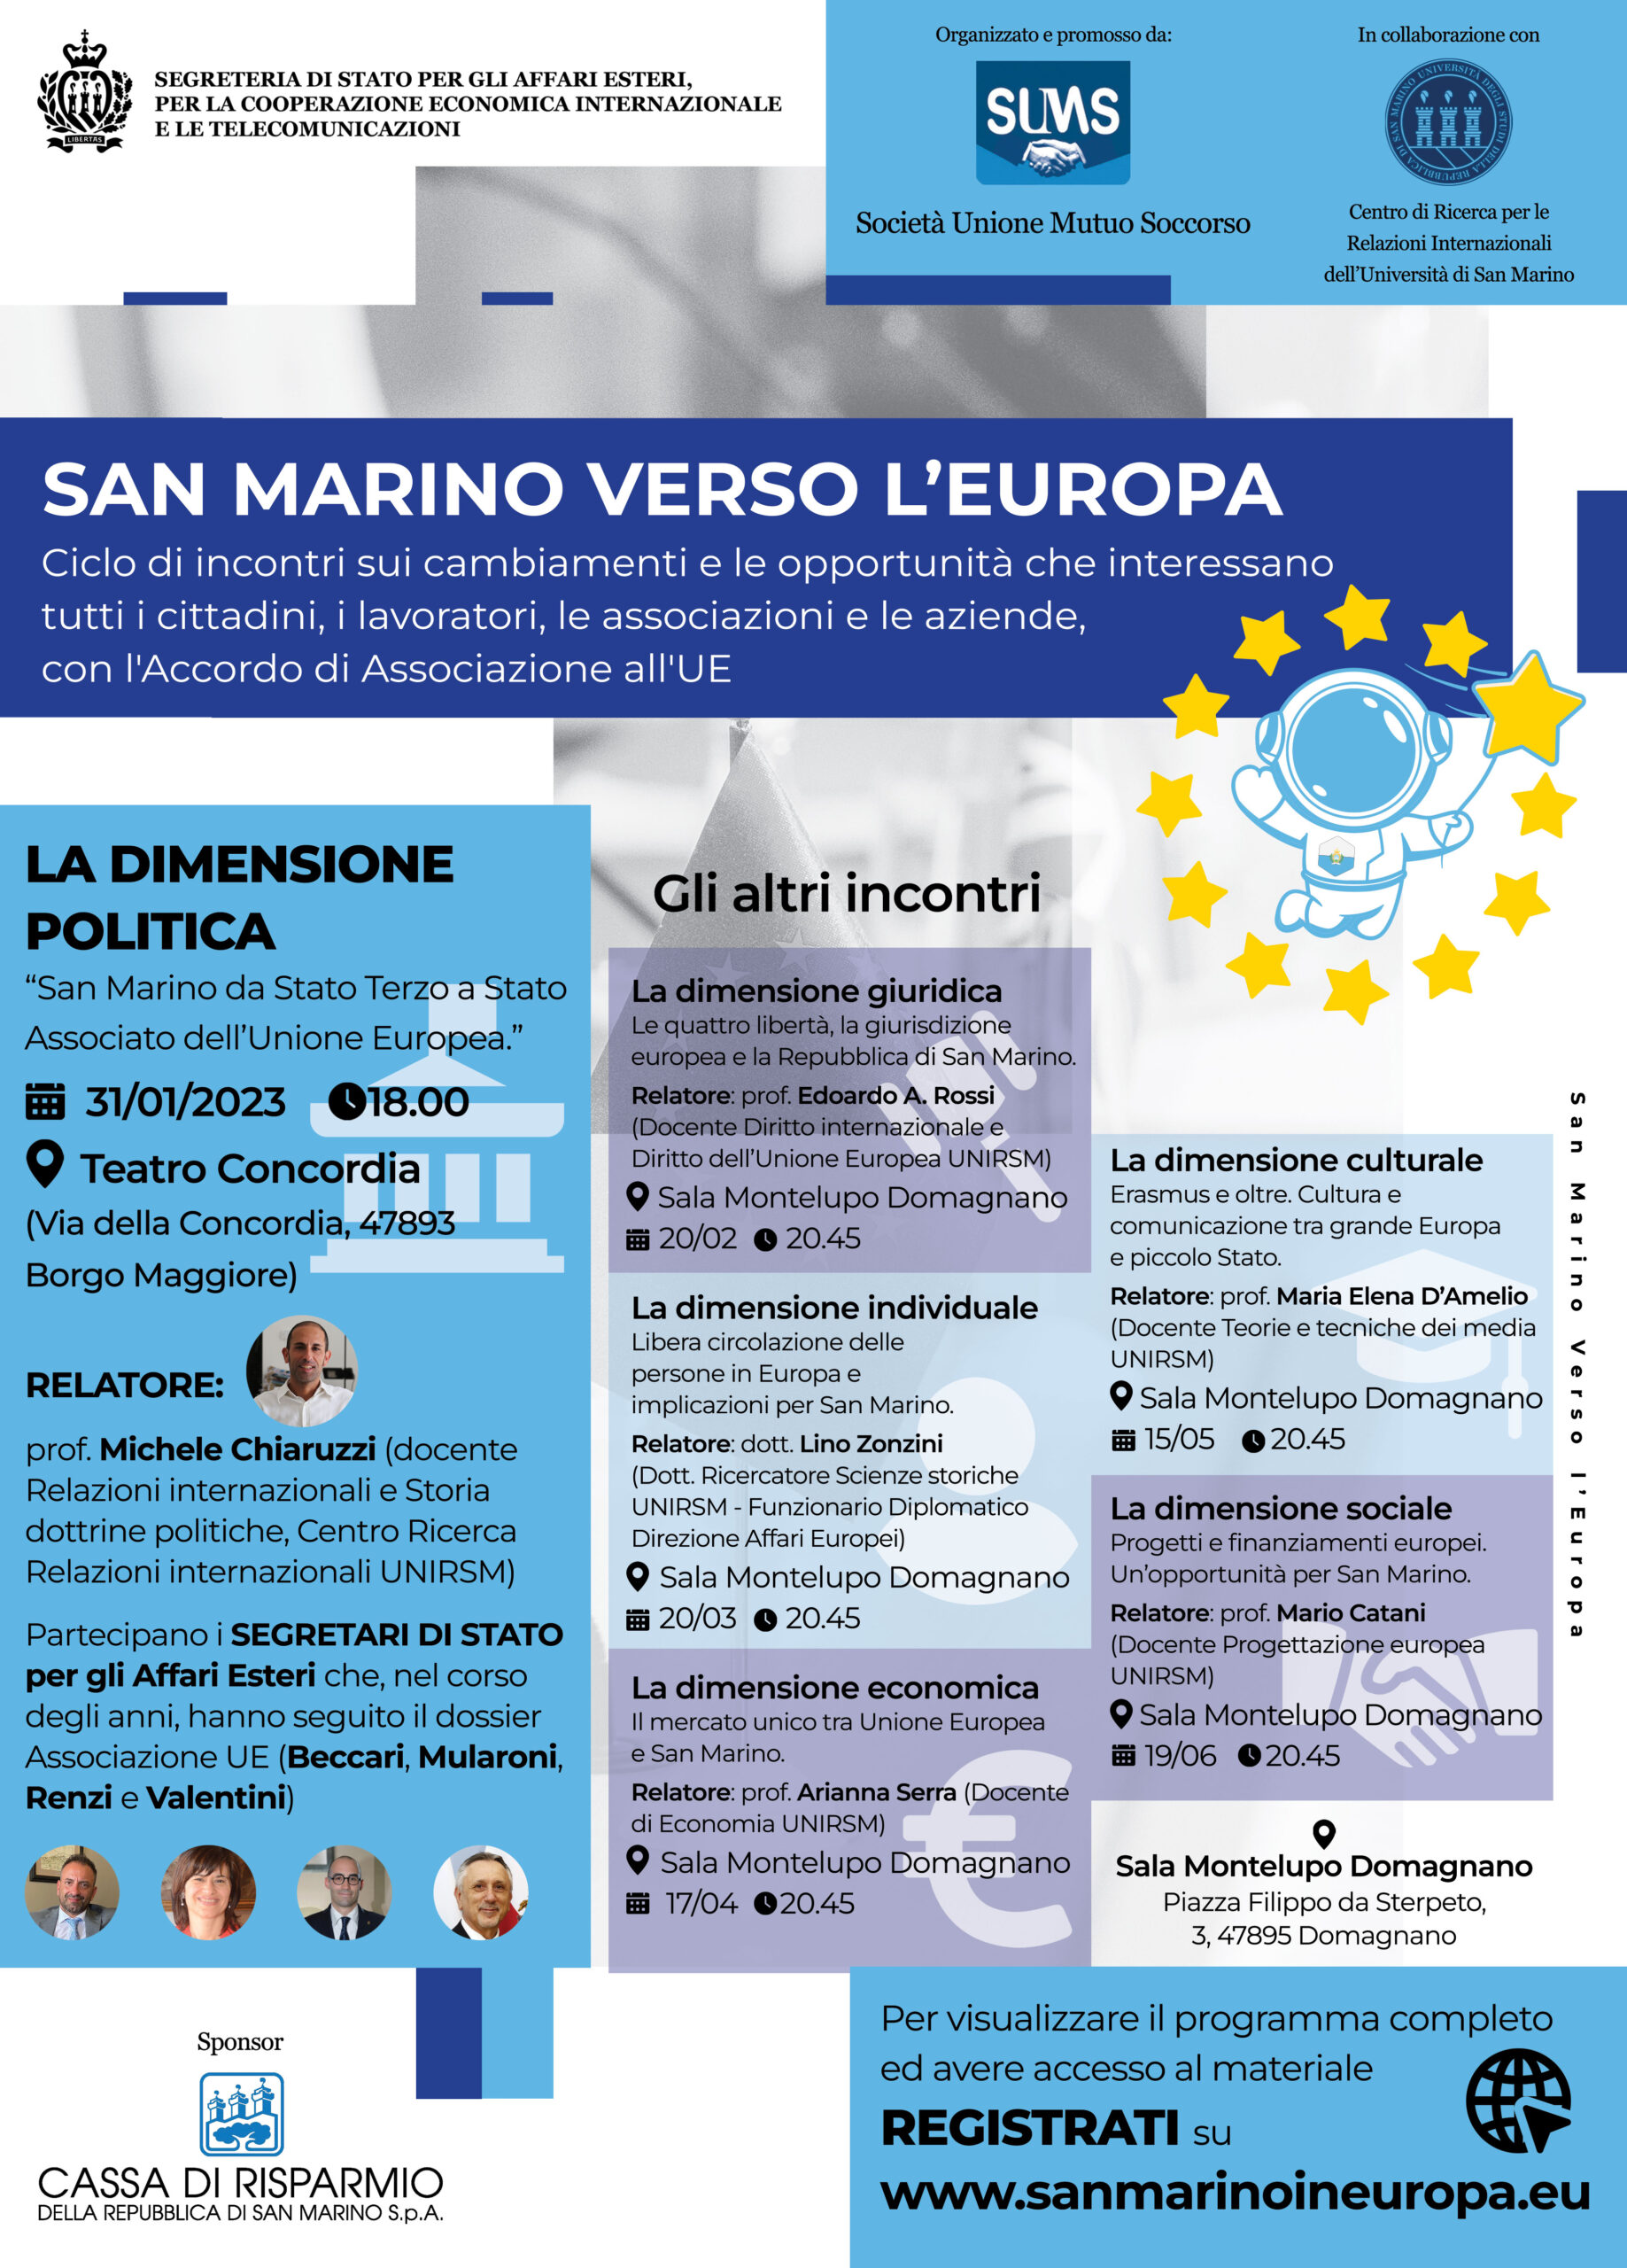 “San Marino verso l’Europa”: al via il secondo incontro presso la sala Montelupo di Domagnano